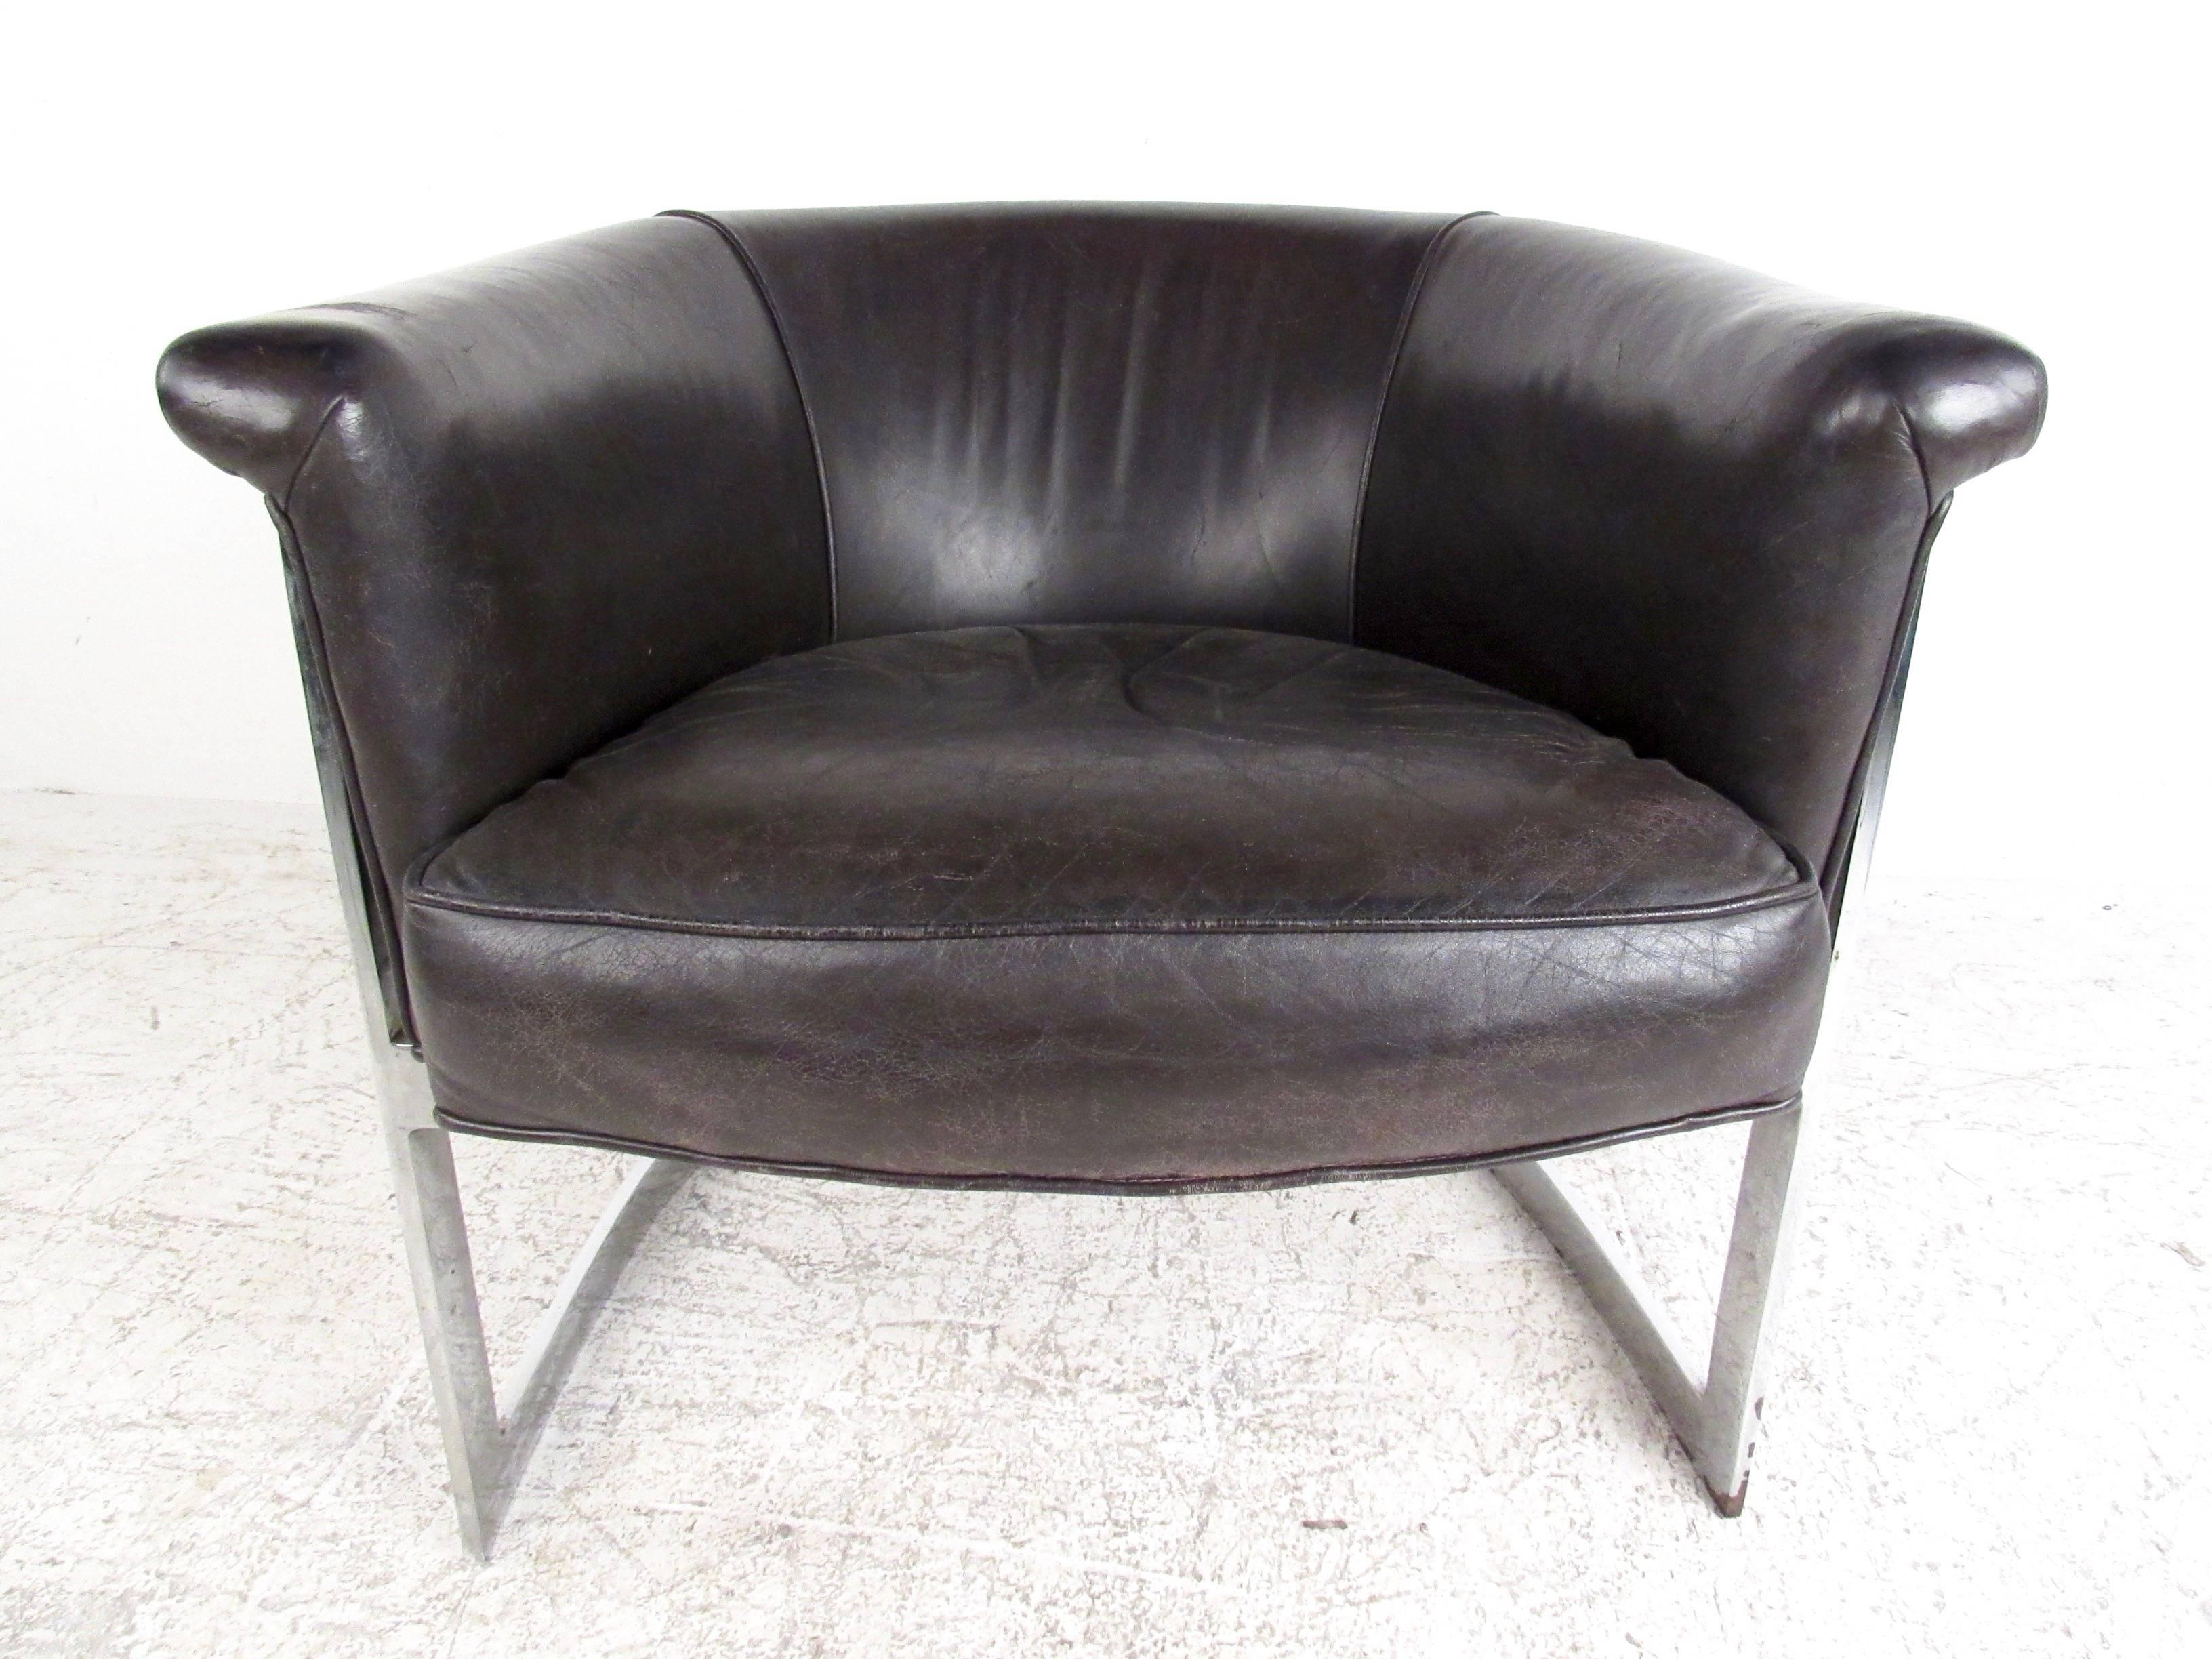 Dieser einzigartige Stuhl mit fassförmiger Rückenlehne besteht aus dunkelbraunem Leder und einem verchromten Freischwingersockel im Stil von Milo Baughman. Bequeme und stilvolle Mid-Century-Sitzmöbel für jedes Interieur. Dieser einzigartige